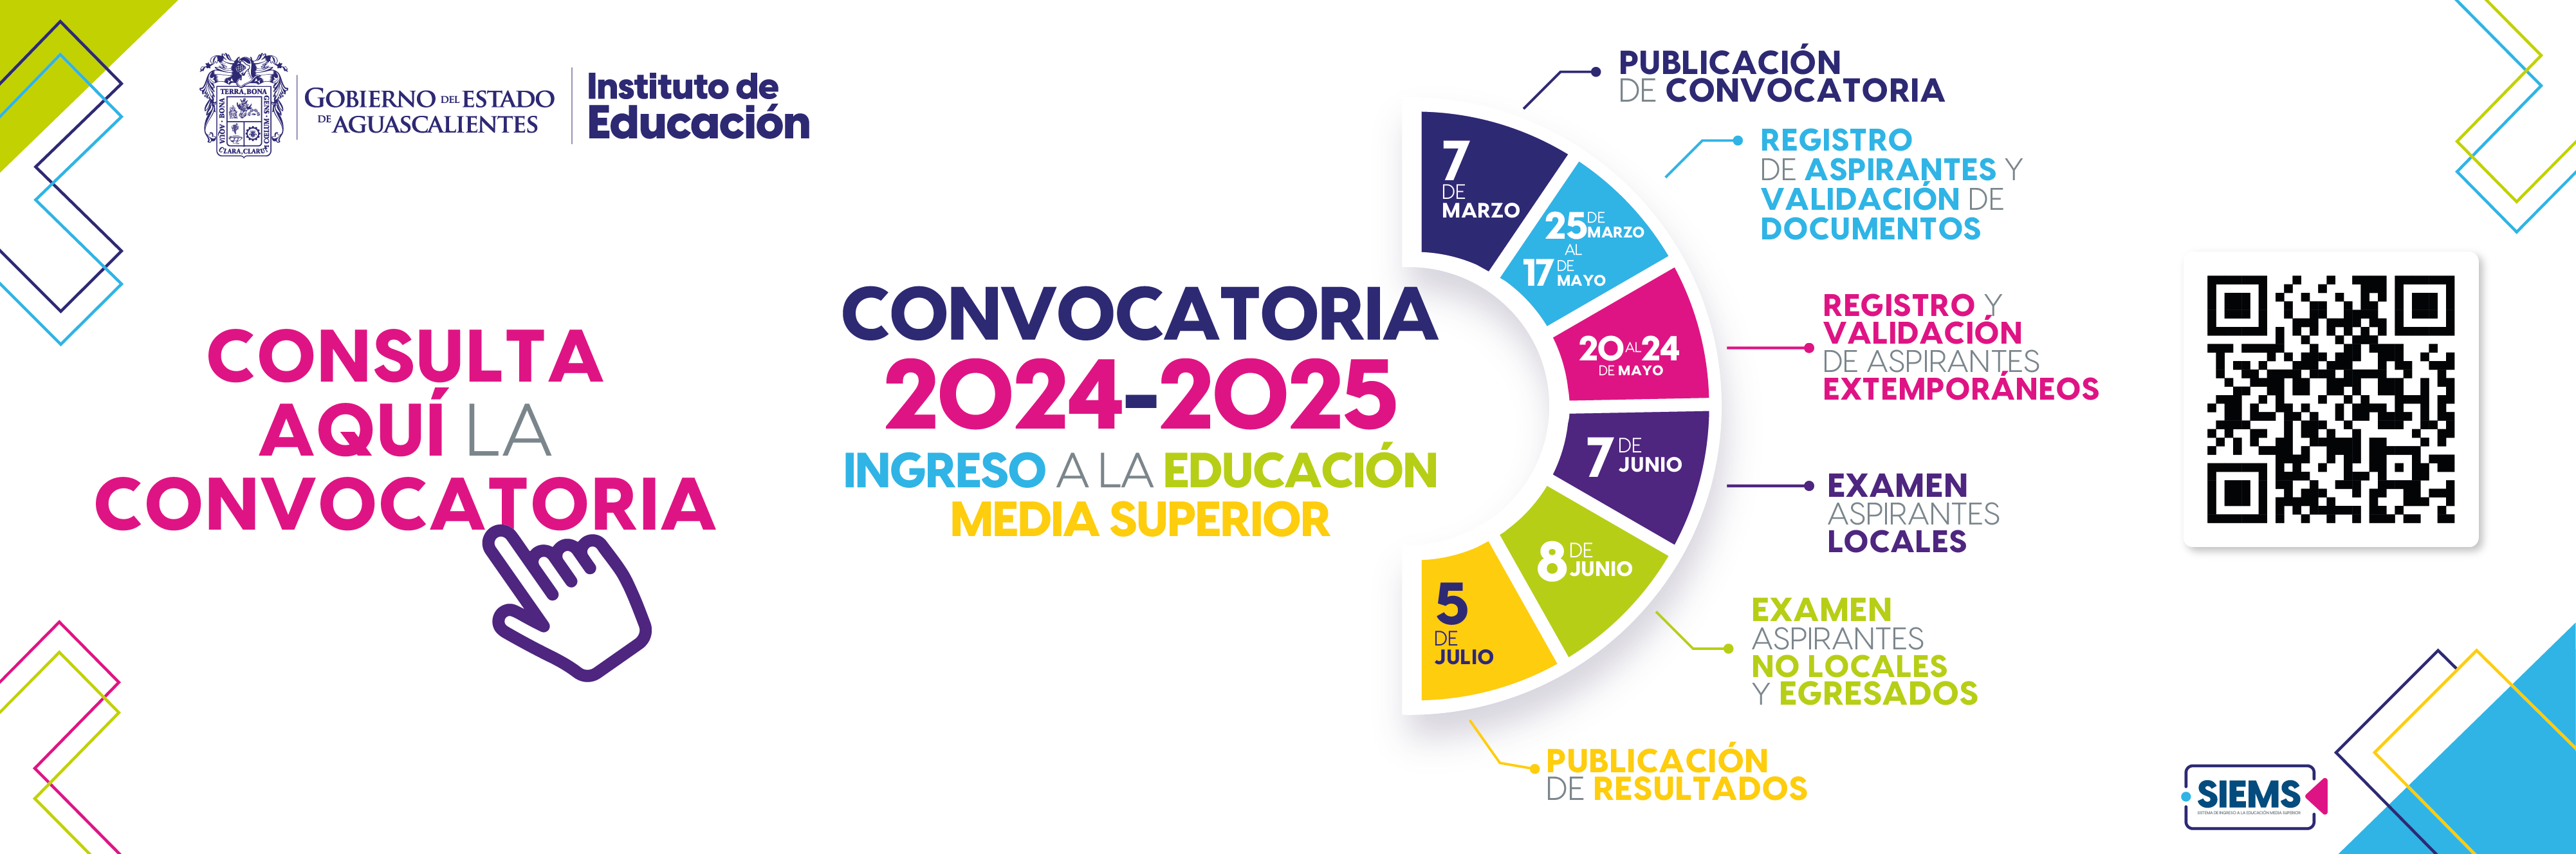 CONVOCATORIA 2023 - 2024 INGRESO A LA EDUCACIÓN MEDIA SUPERIOR